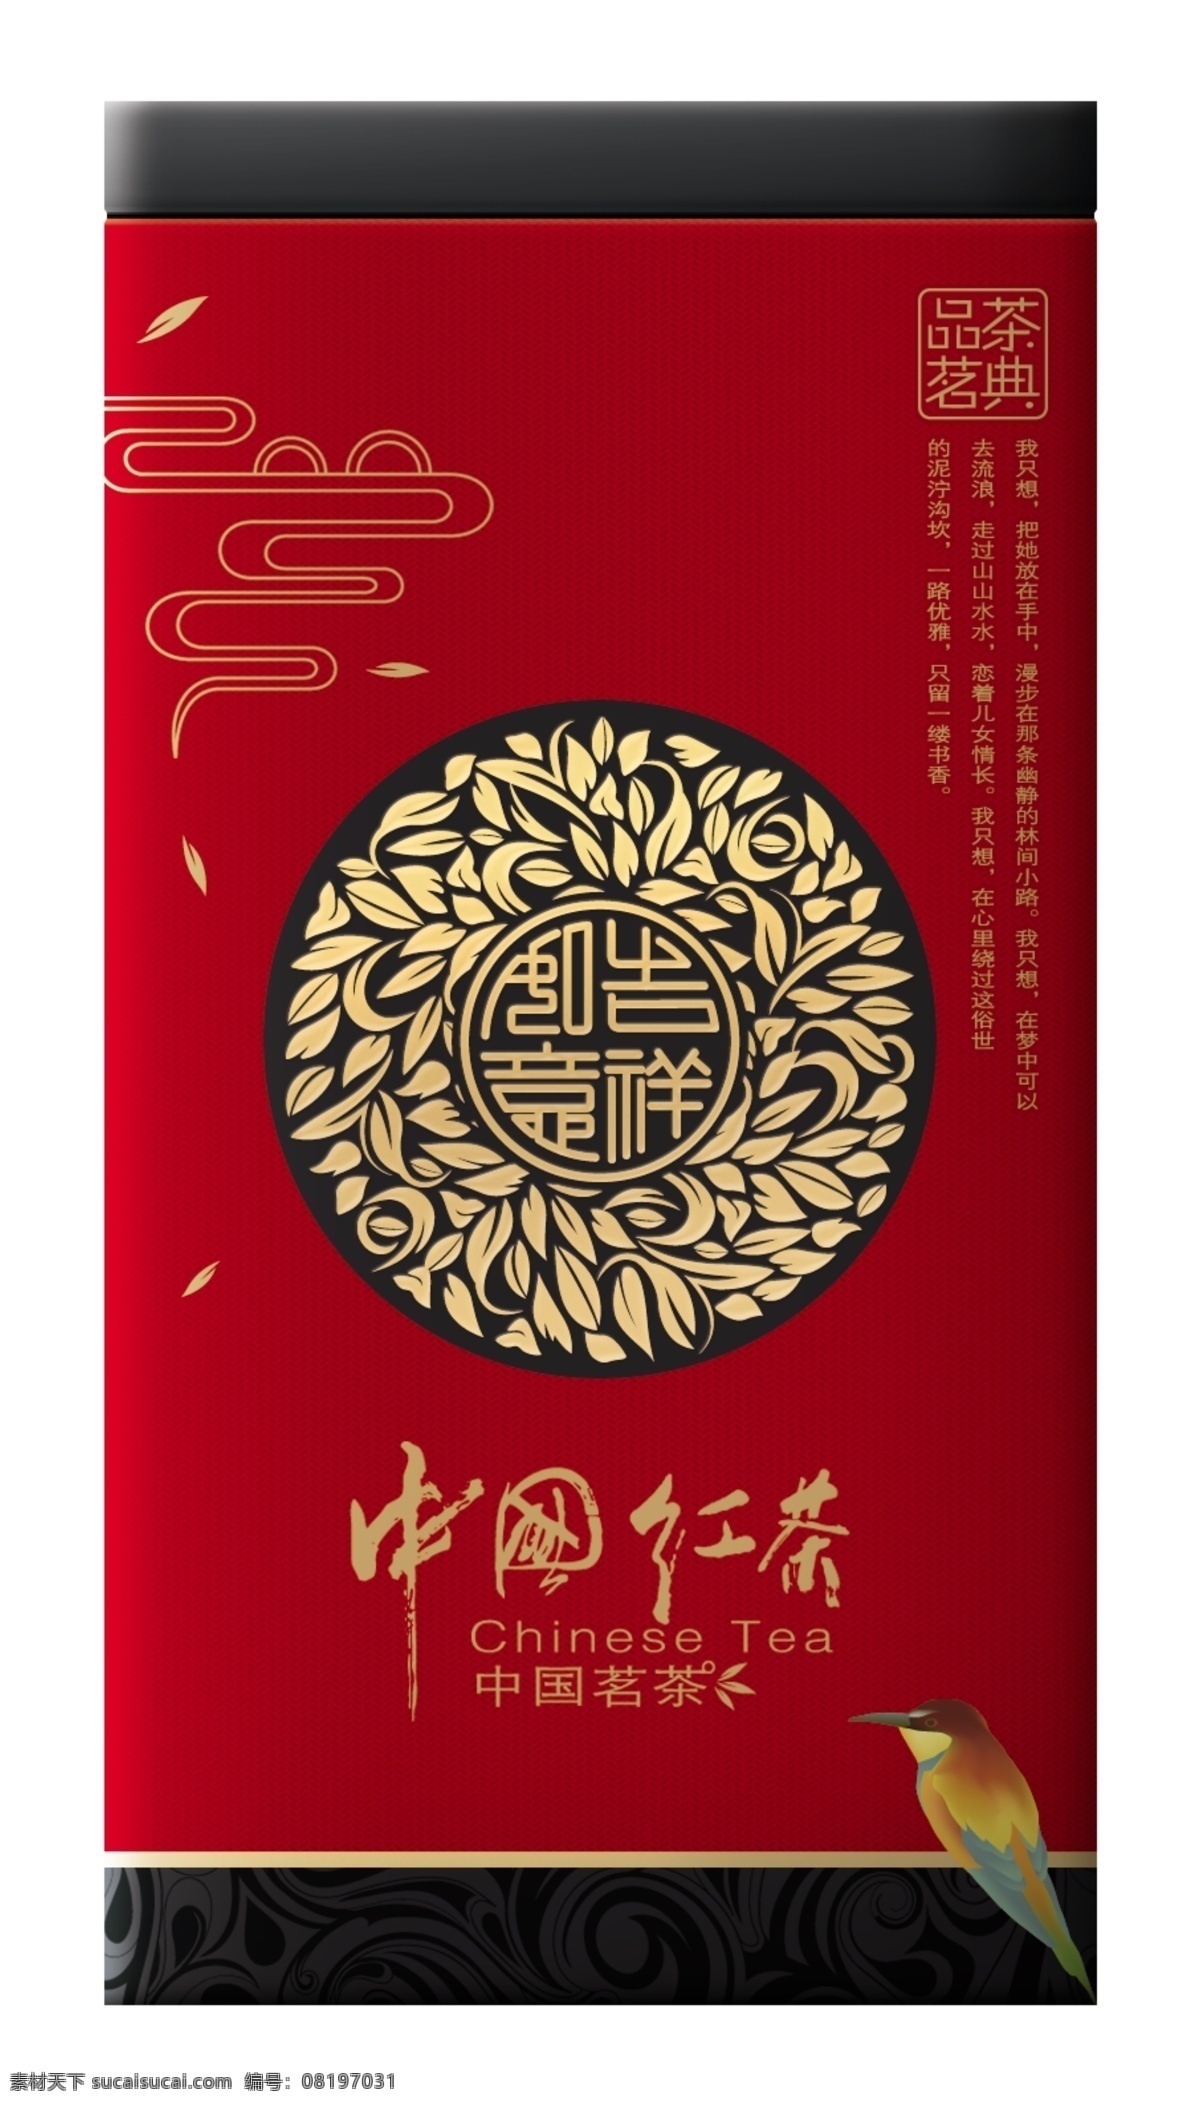 中国 红茶 平面图 茶包装 线描图案 茶文化 铁罐 中国红茶 精品茶叶盒 茶叶铁罐 包装设计